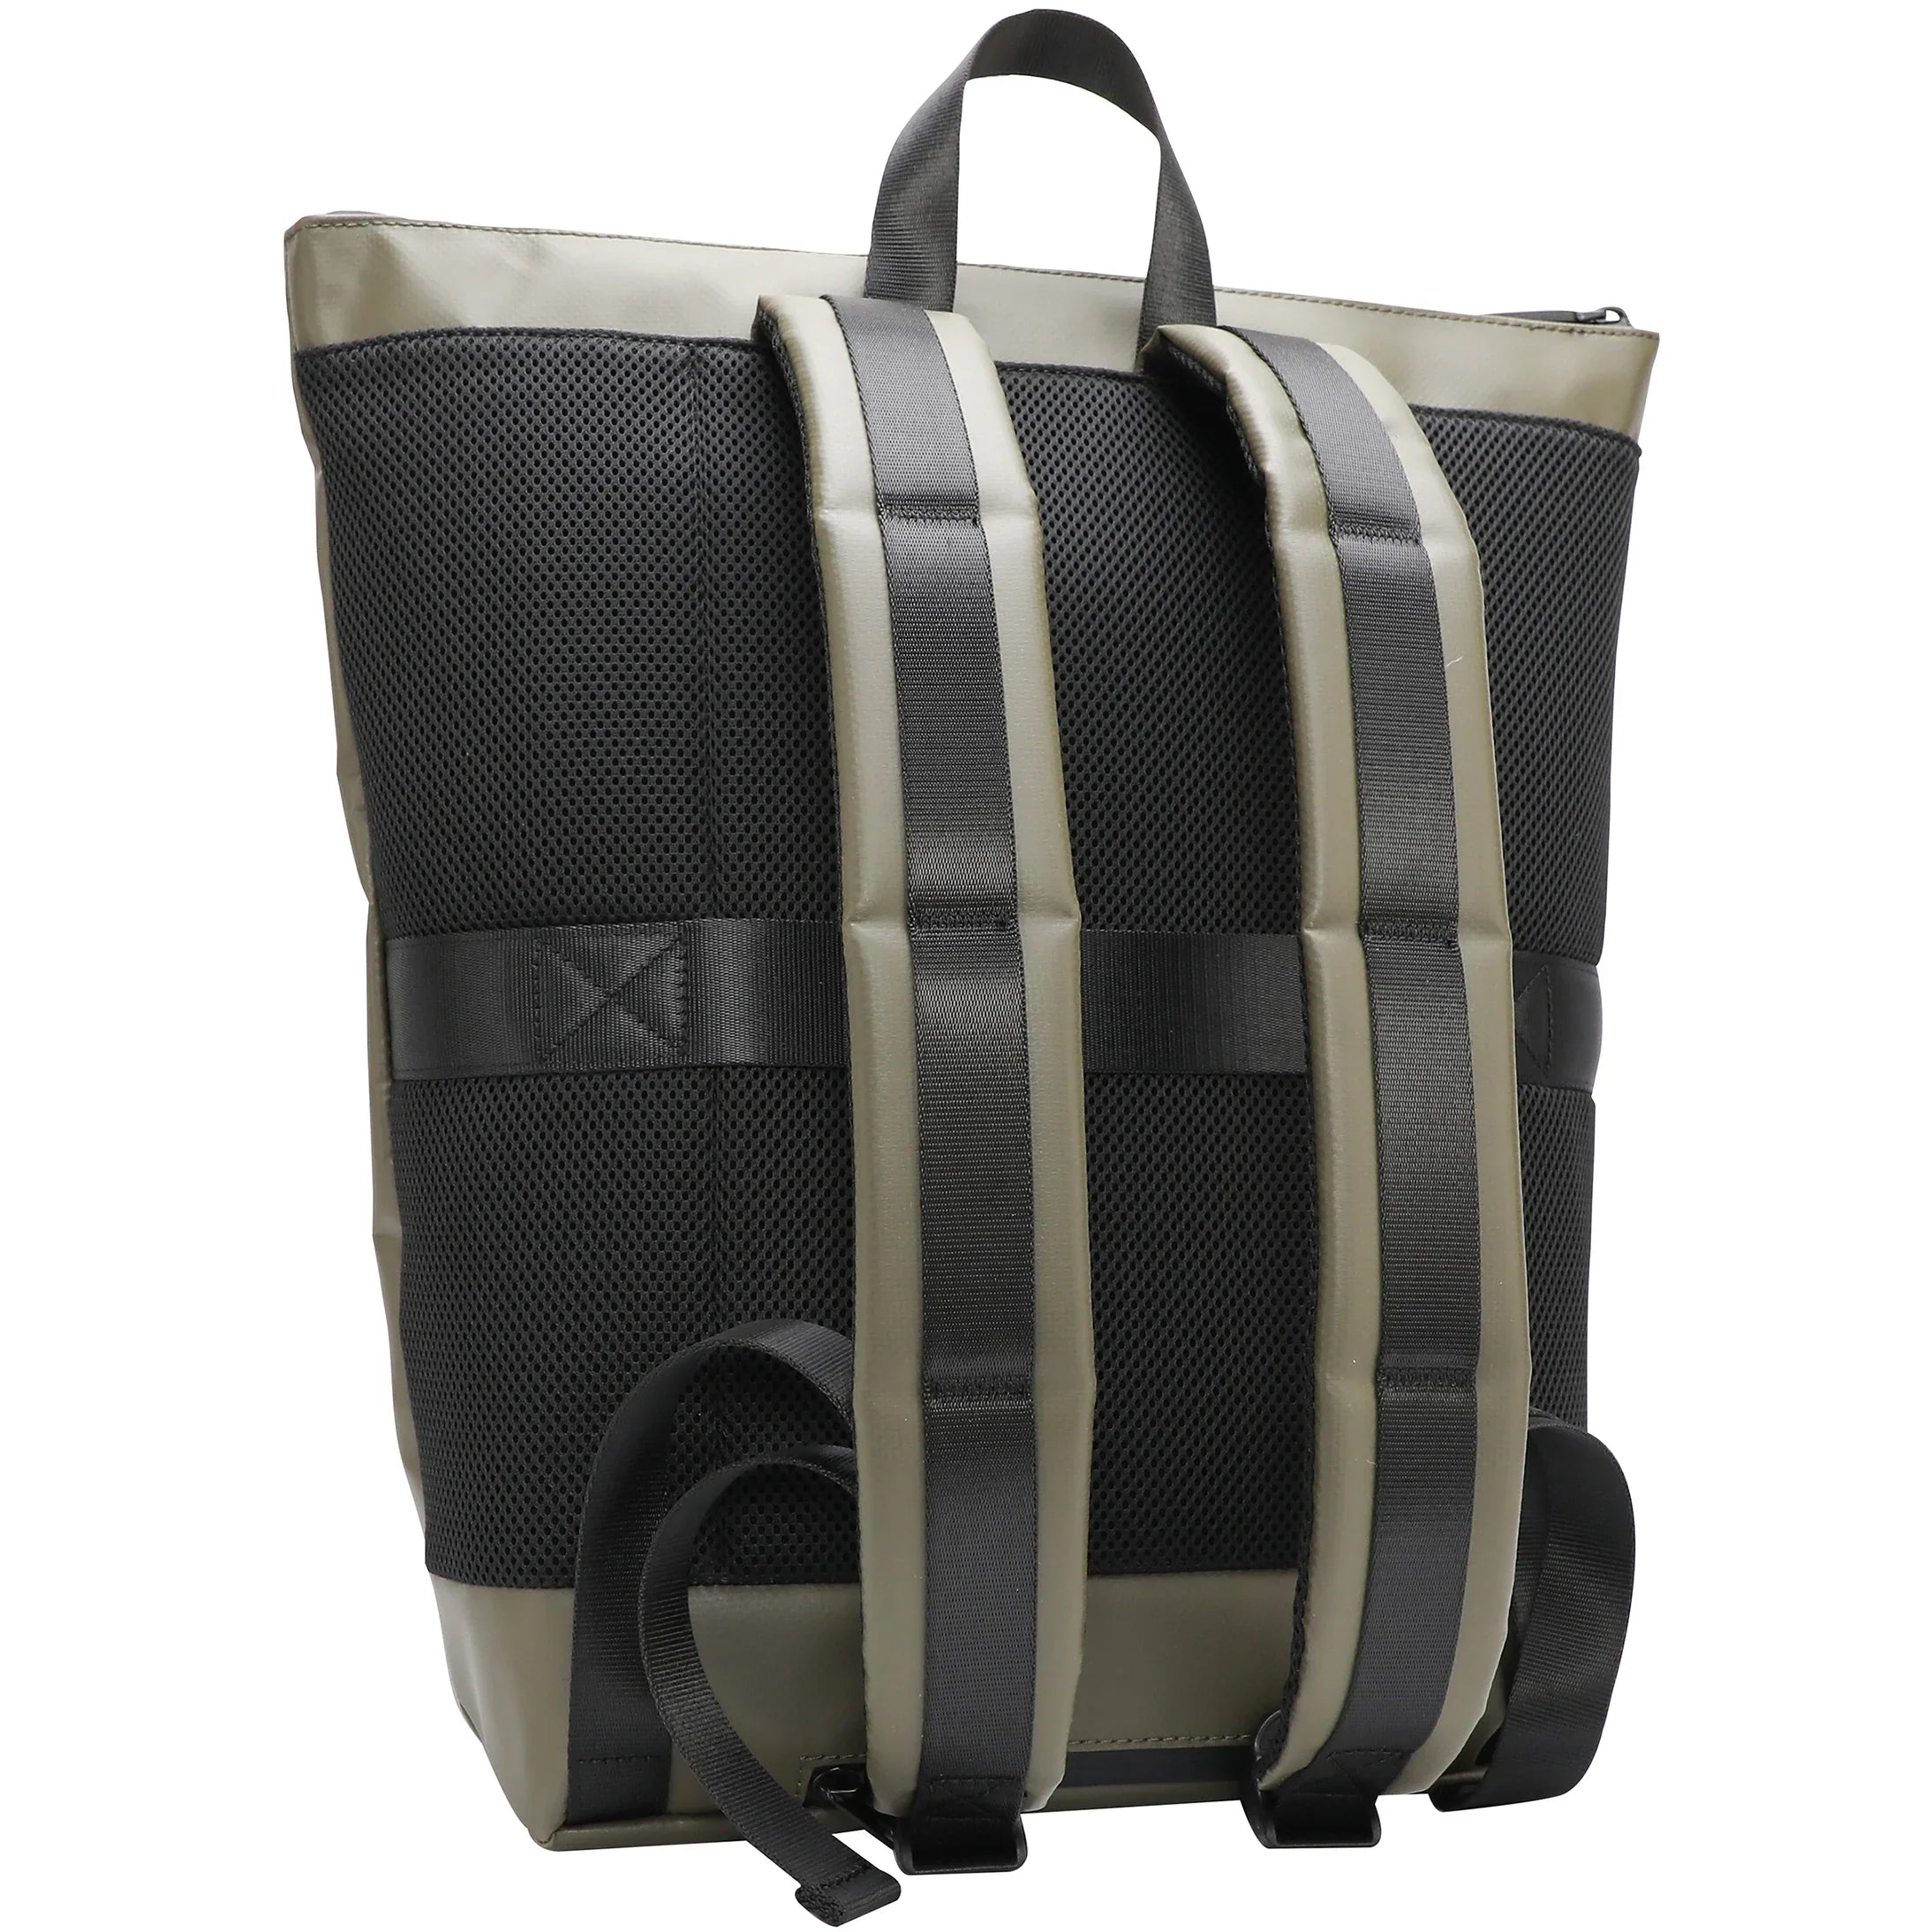 Strellson Stockwell 2.0 Backpack SVZ 1 43 cm - Black